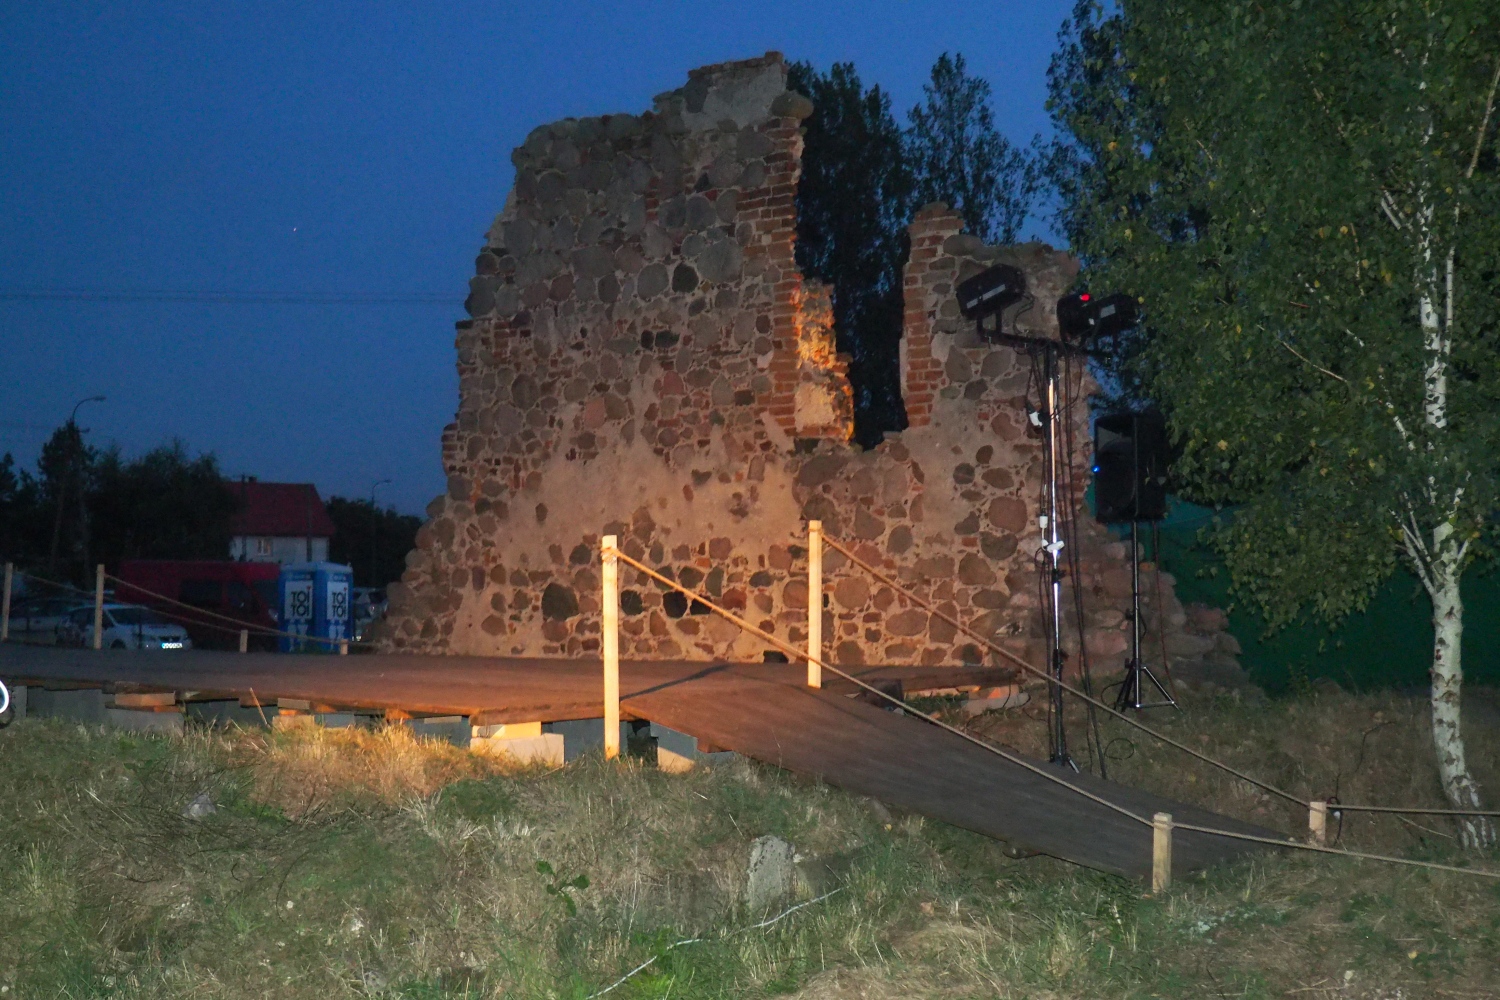 Wrd ruin XIV-wiecznego kocioa w. Krzya w Sierpcu Teatr Dramatyczny z Pocka wystawi spektakl wedug dramatu 